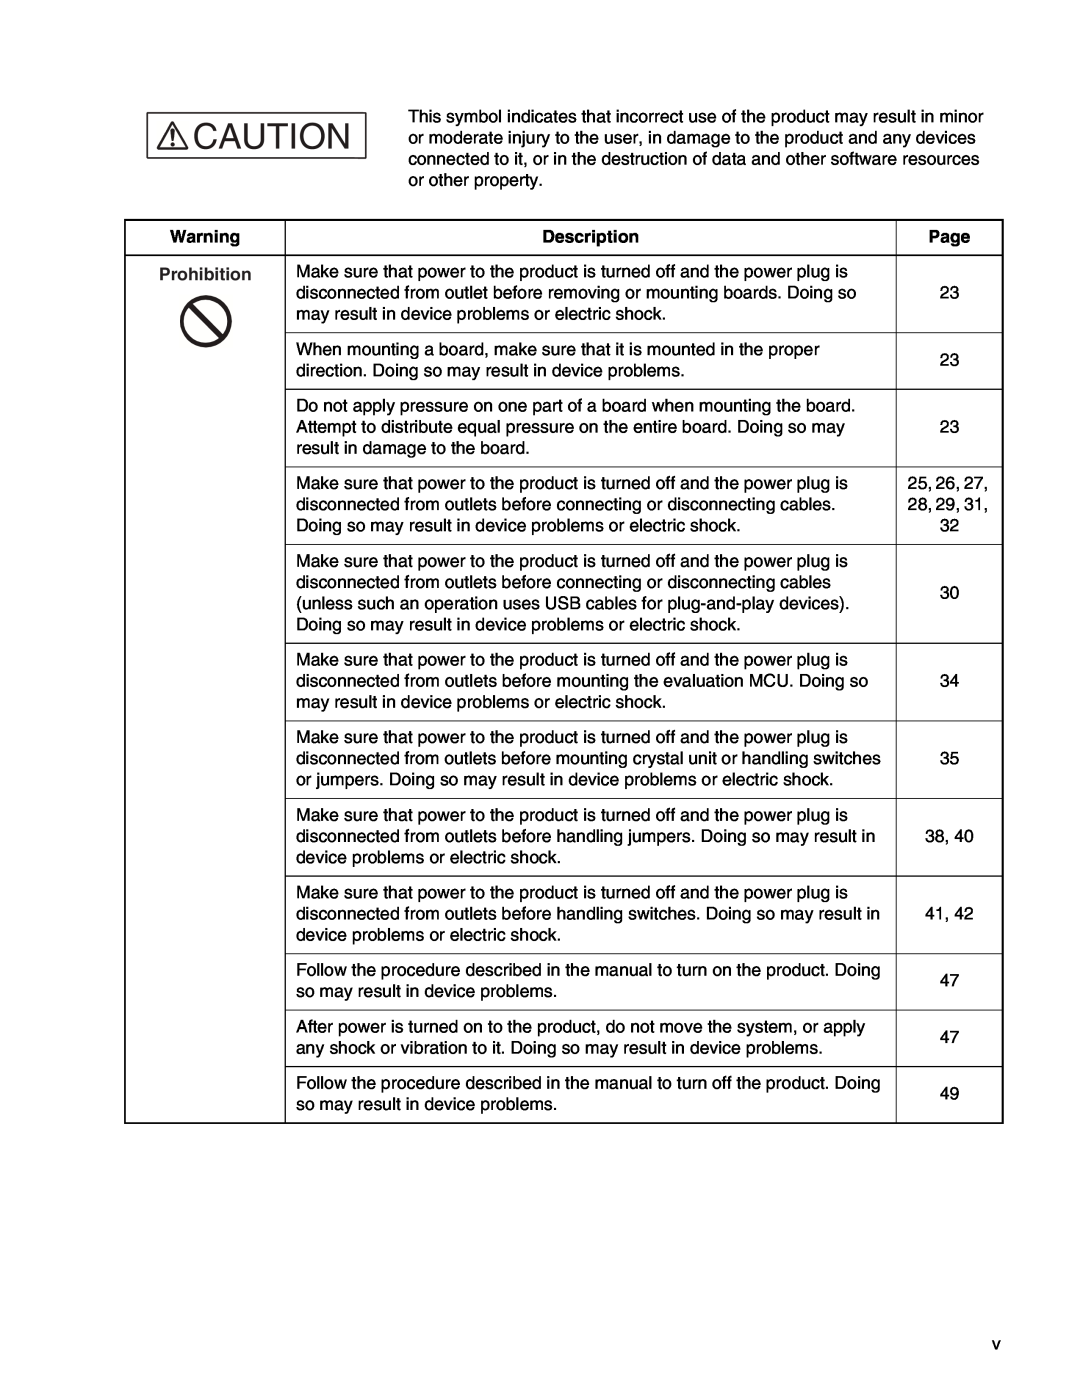 Fujitsu MB2147-01 manual Description, Page, Prohibition, 25, 26, 28, 29 